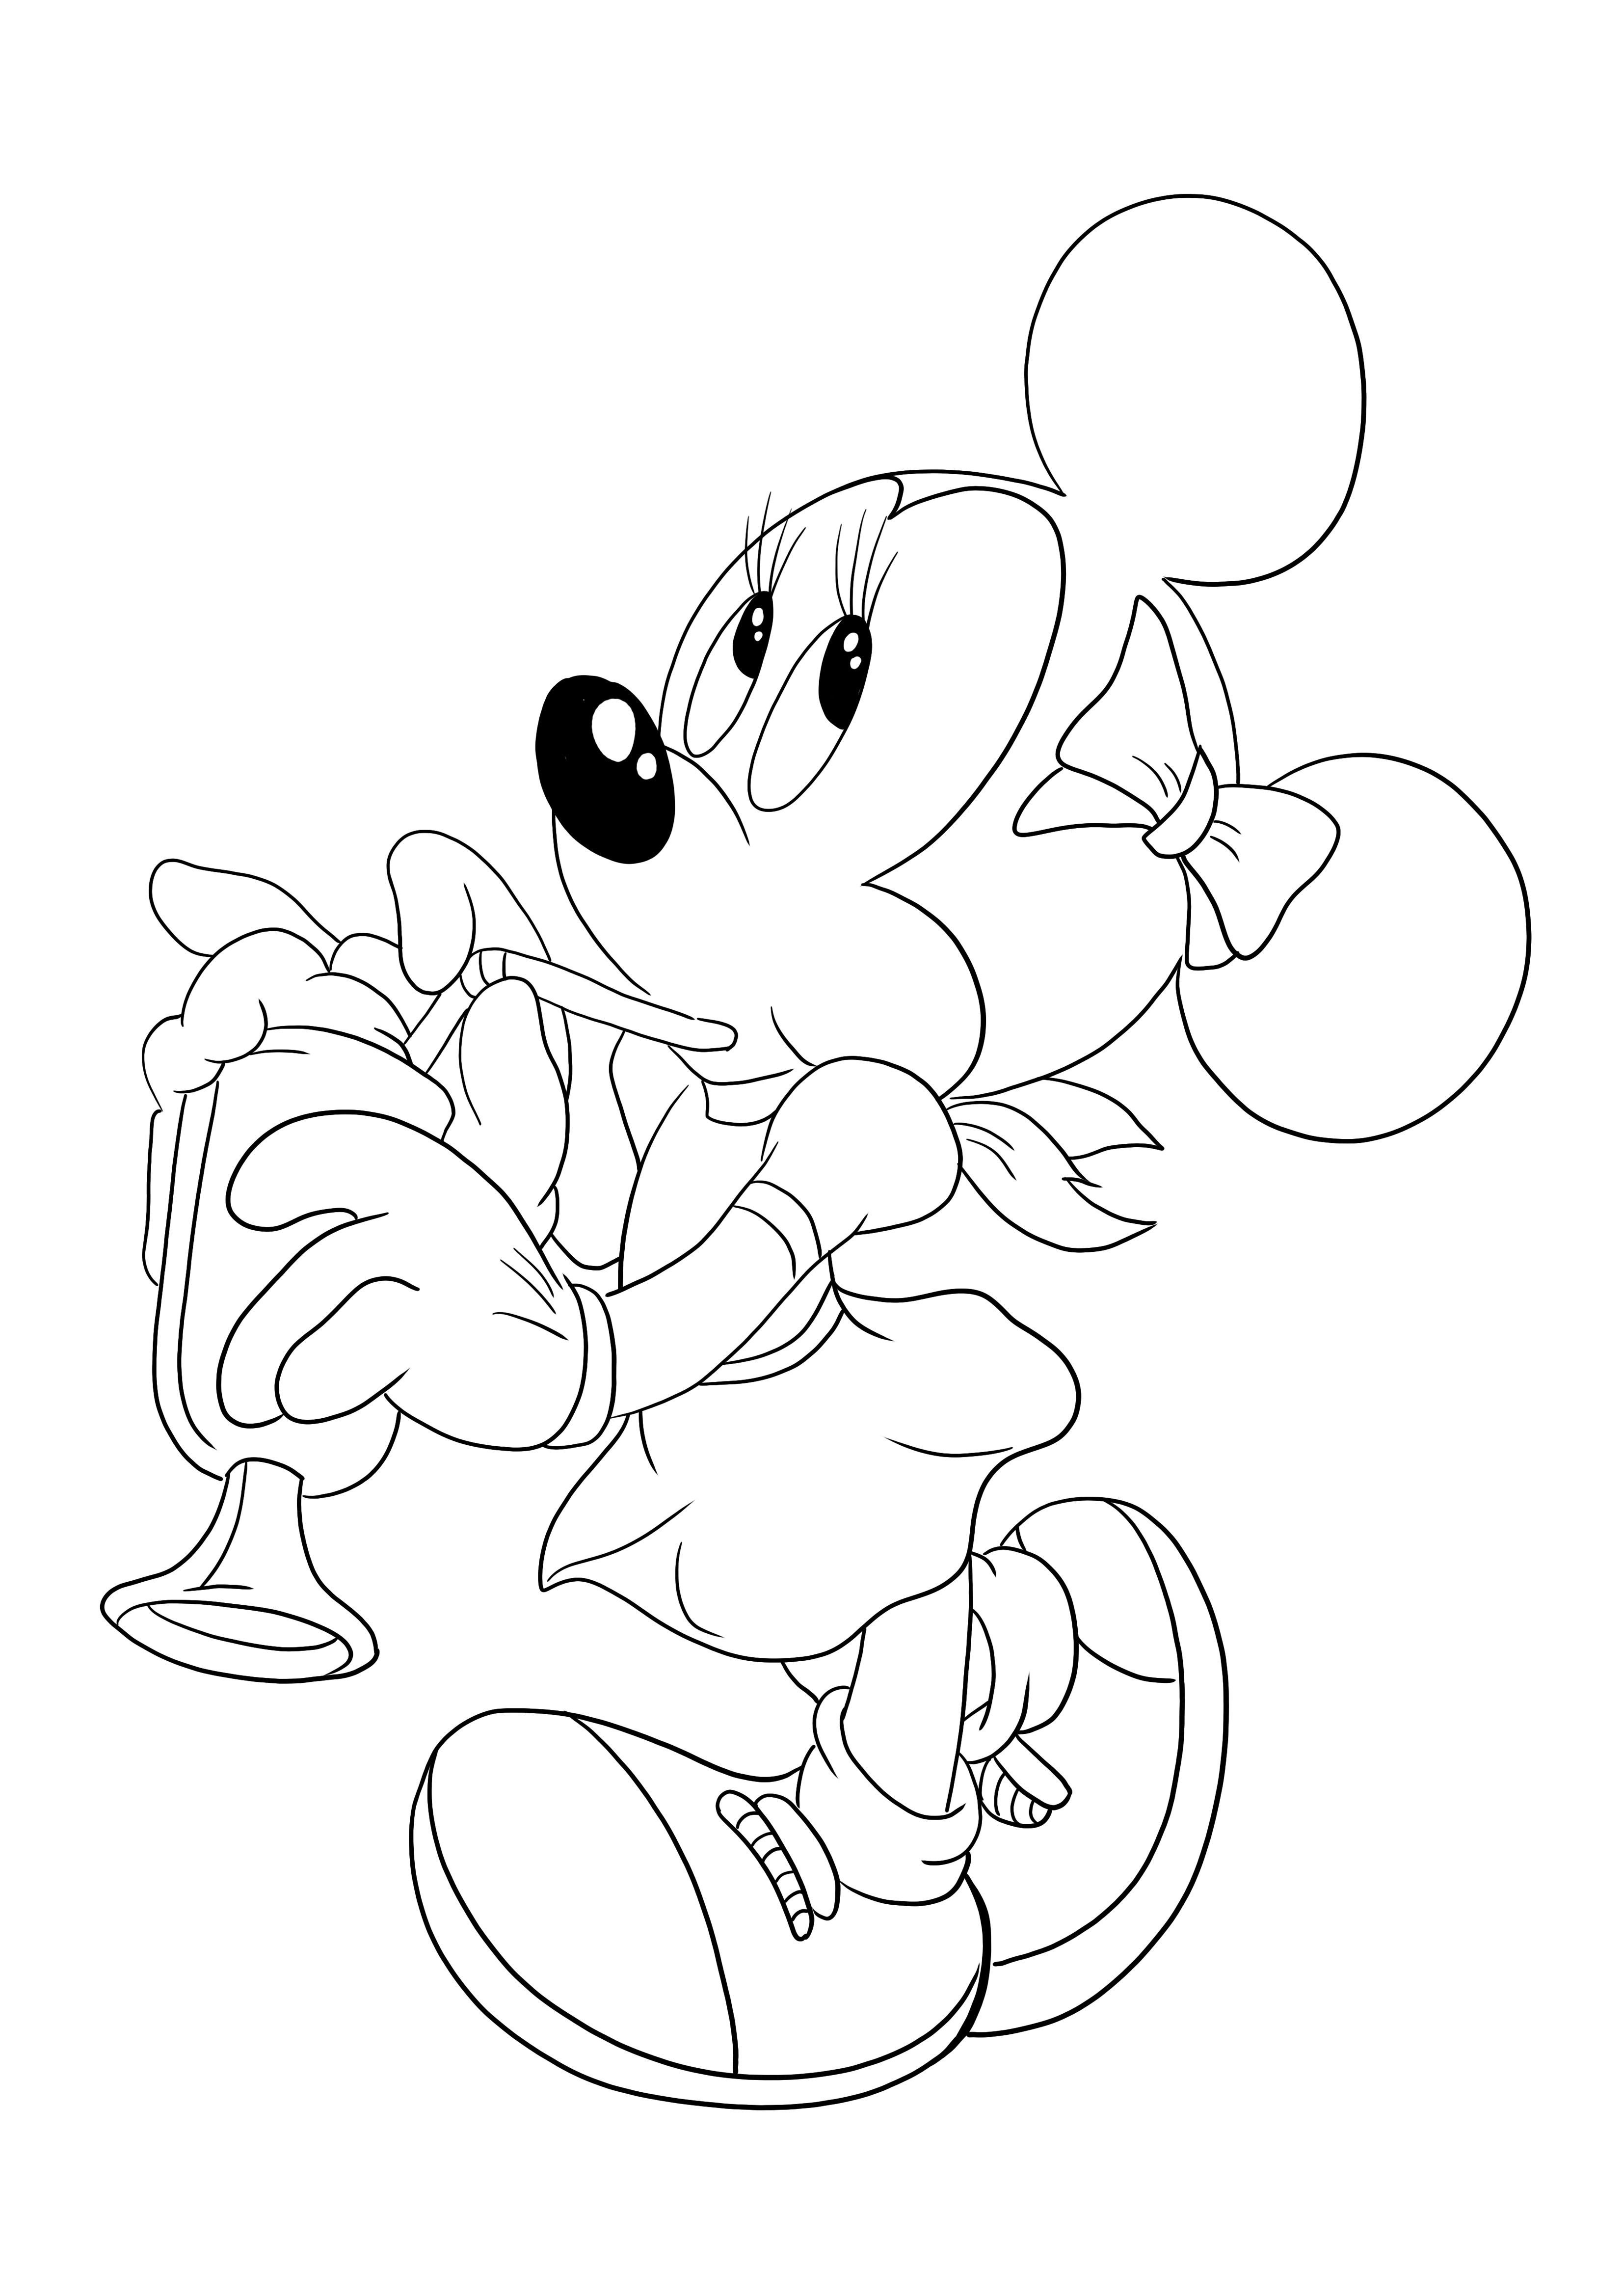 Minnie Mouse ücretsiz indirme ve boyama sayfası için pipetle içiyor